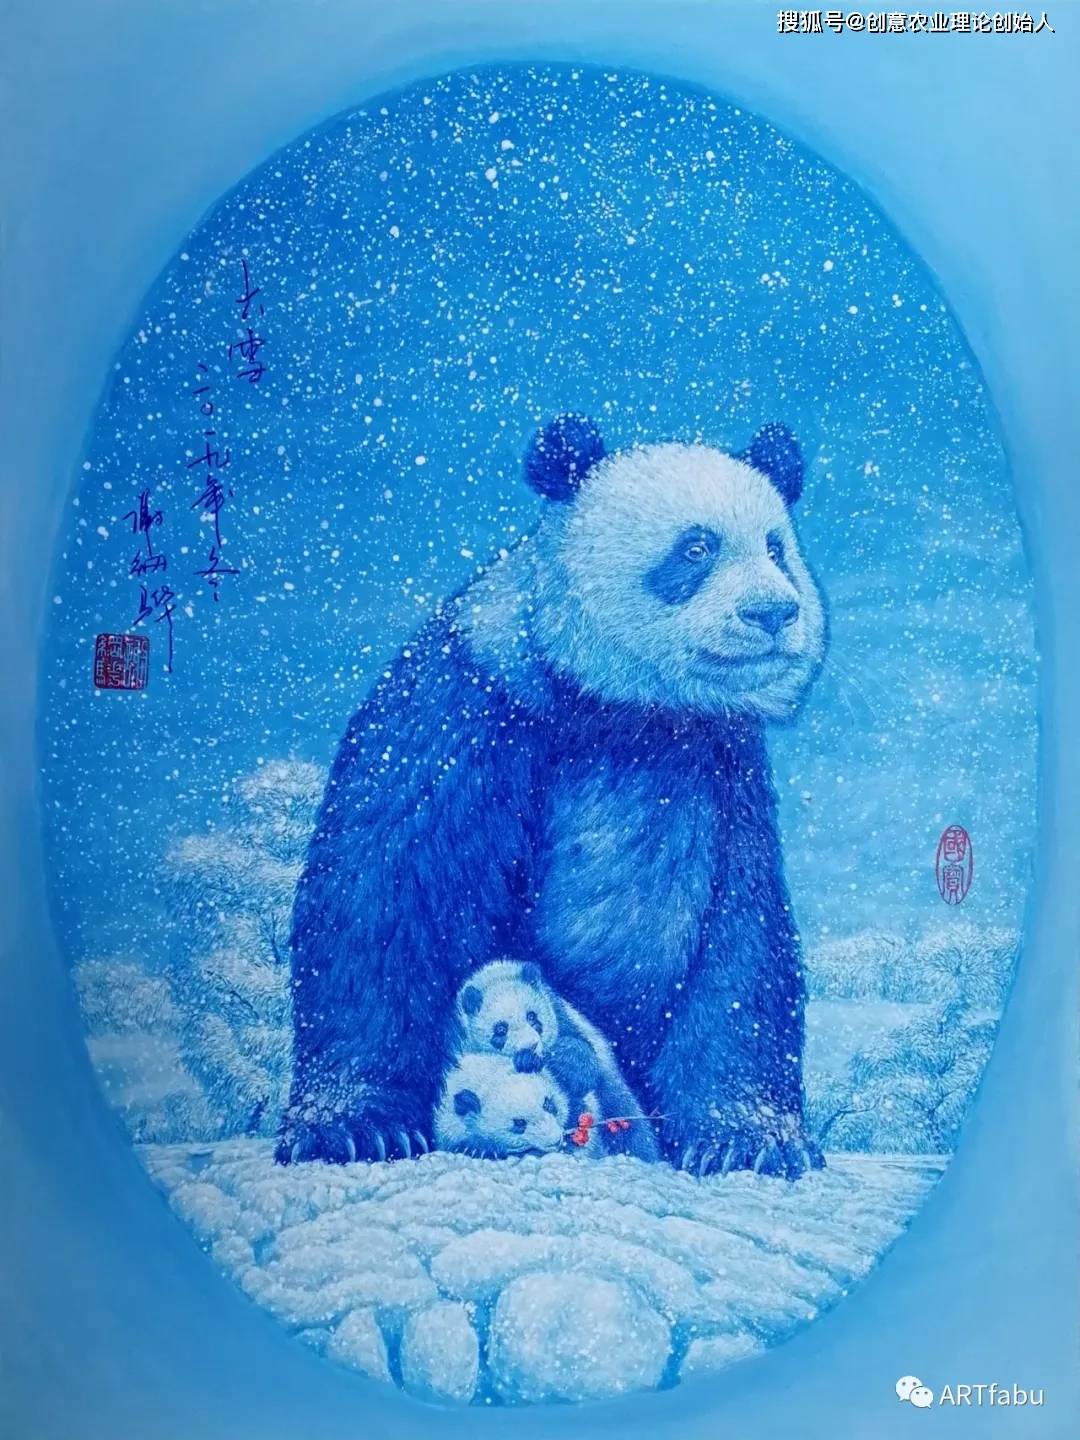 大熊猫的艺术名片 -----谢纲骅大熊猫油画欣赏